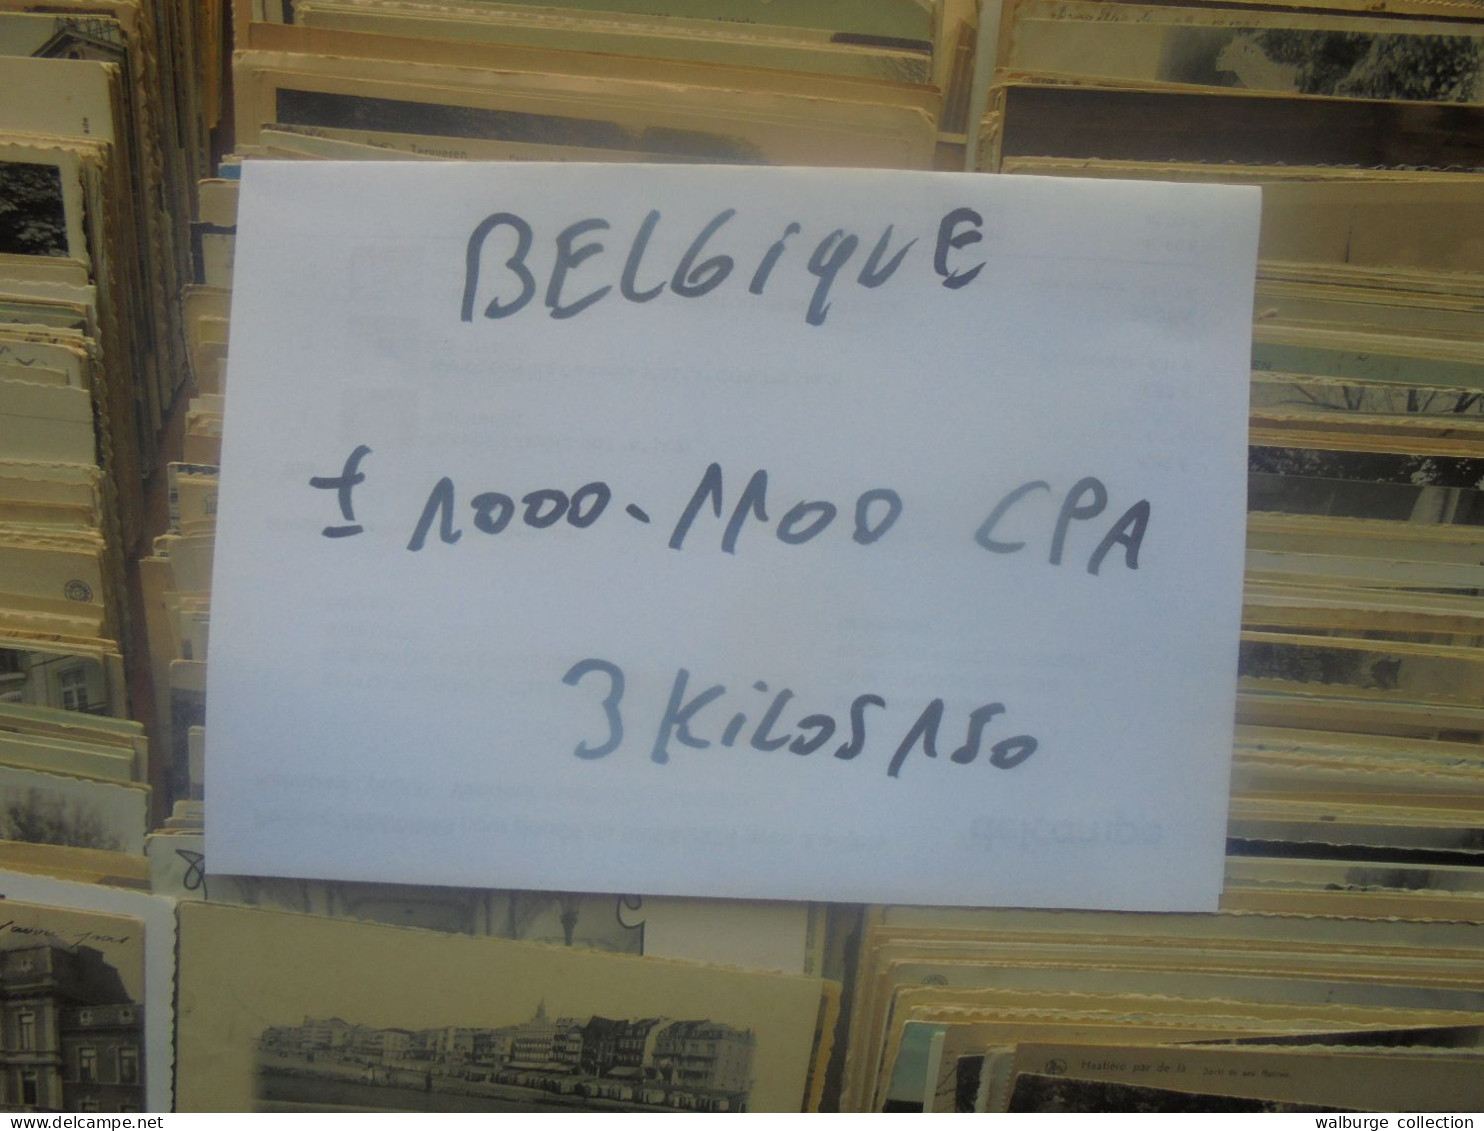 +++BELGIQUE BEAU LOT ENVIRON 1000-1100 CPA MAJORITES ANCIENNES+++ 3 KILOS 150 (Lire ci-bas)